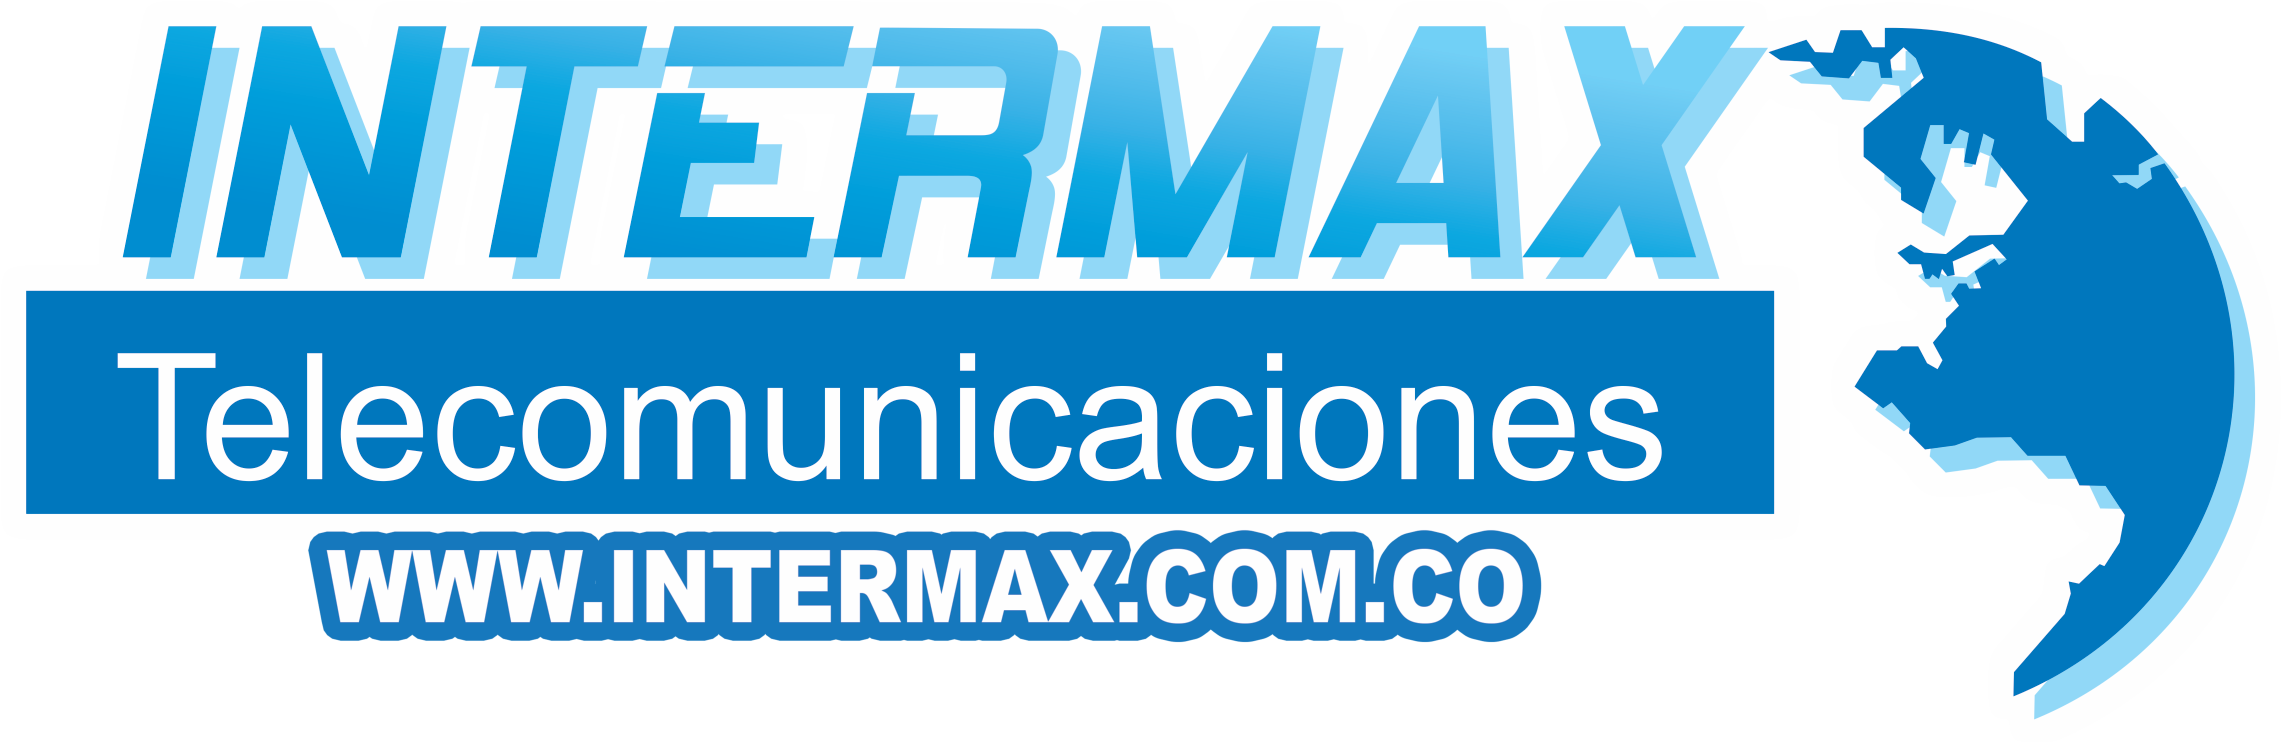 Intermax Telecomunicaciones